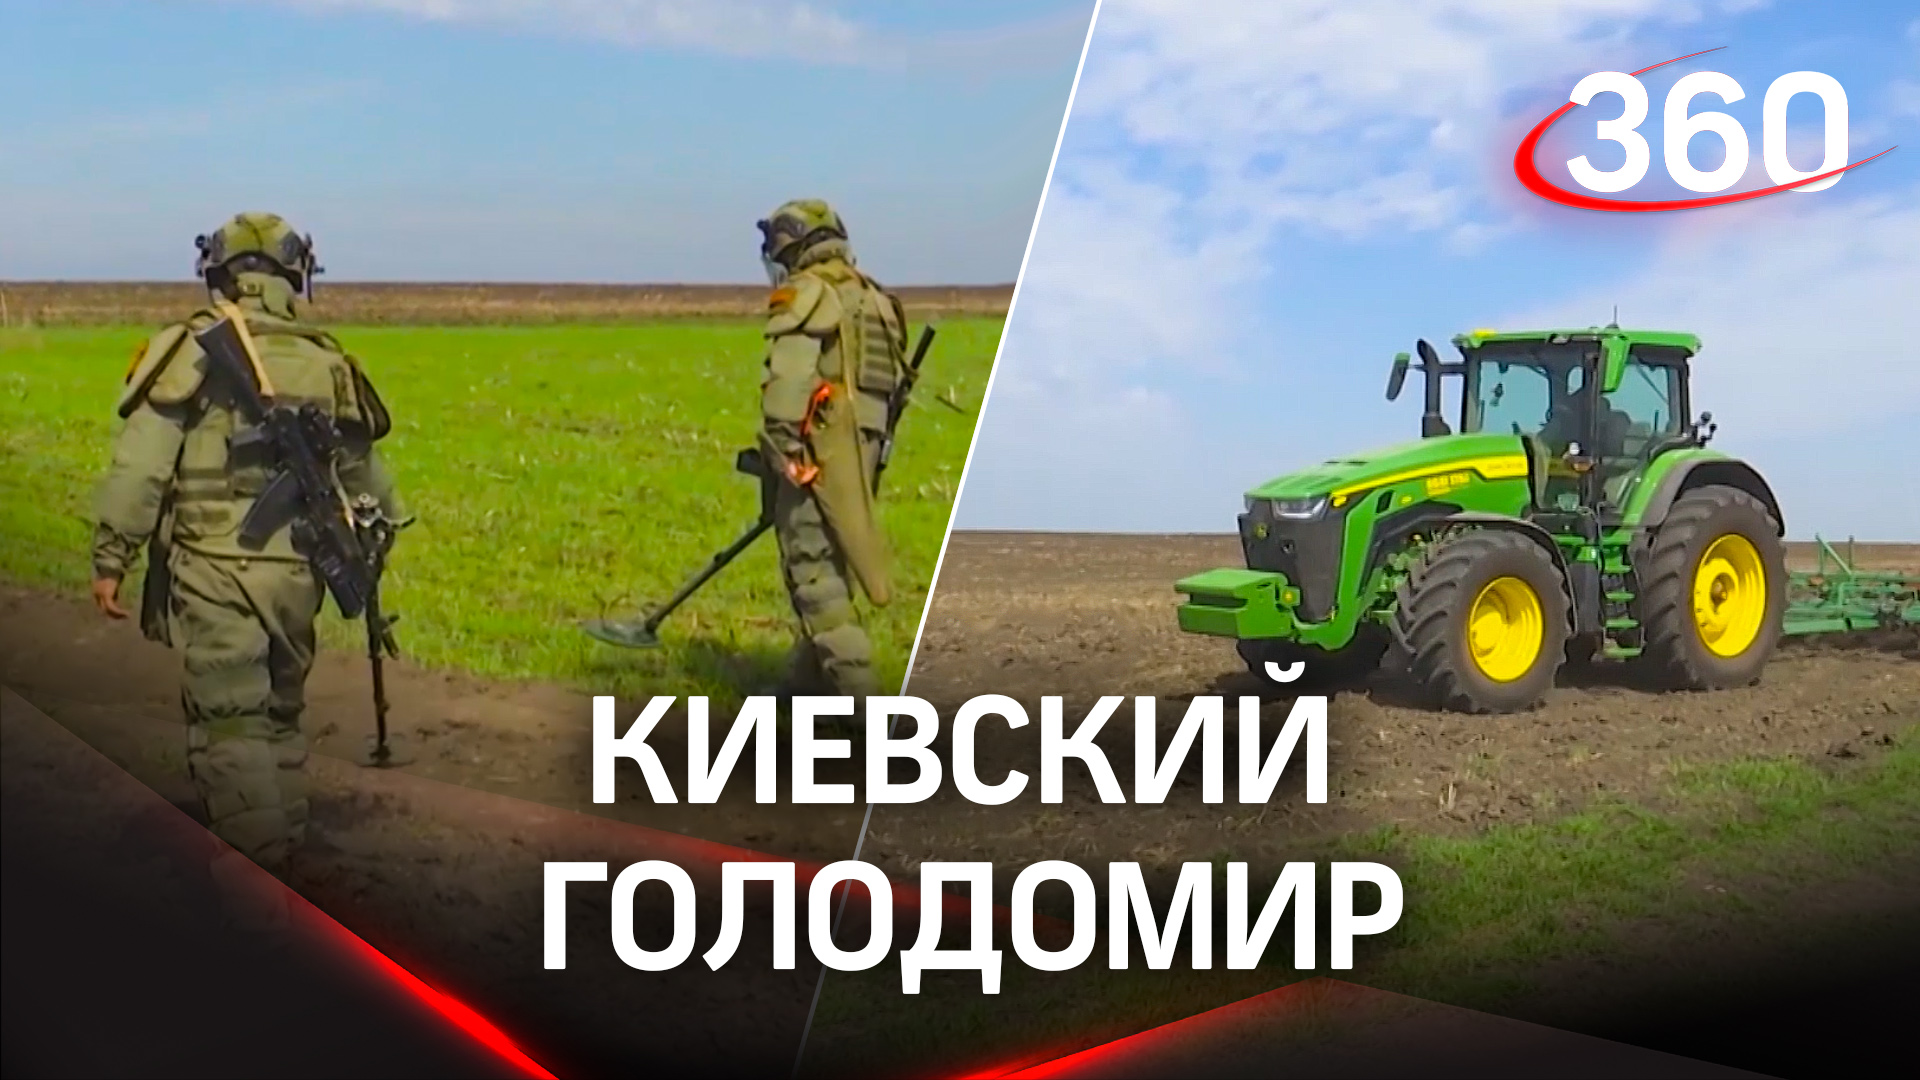 Украинские силы минируют поля, срывая посевную и ставя мир под угрозу голода